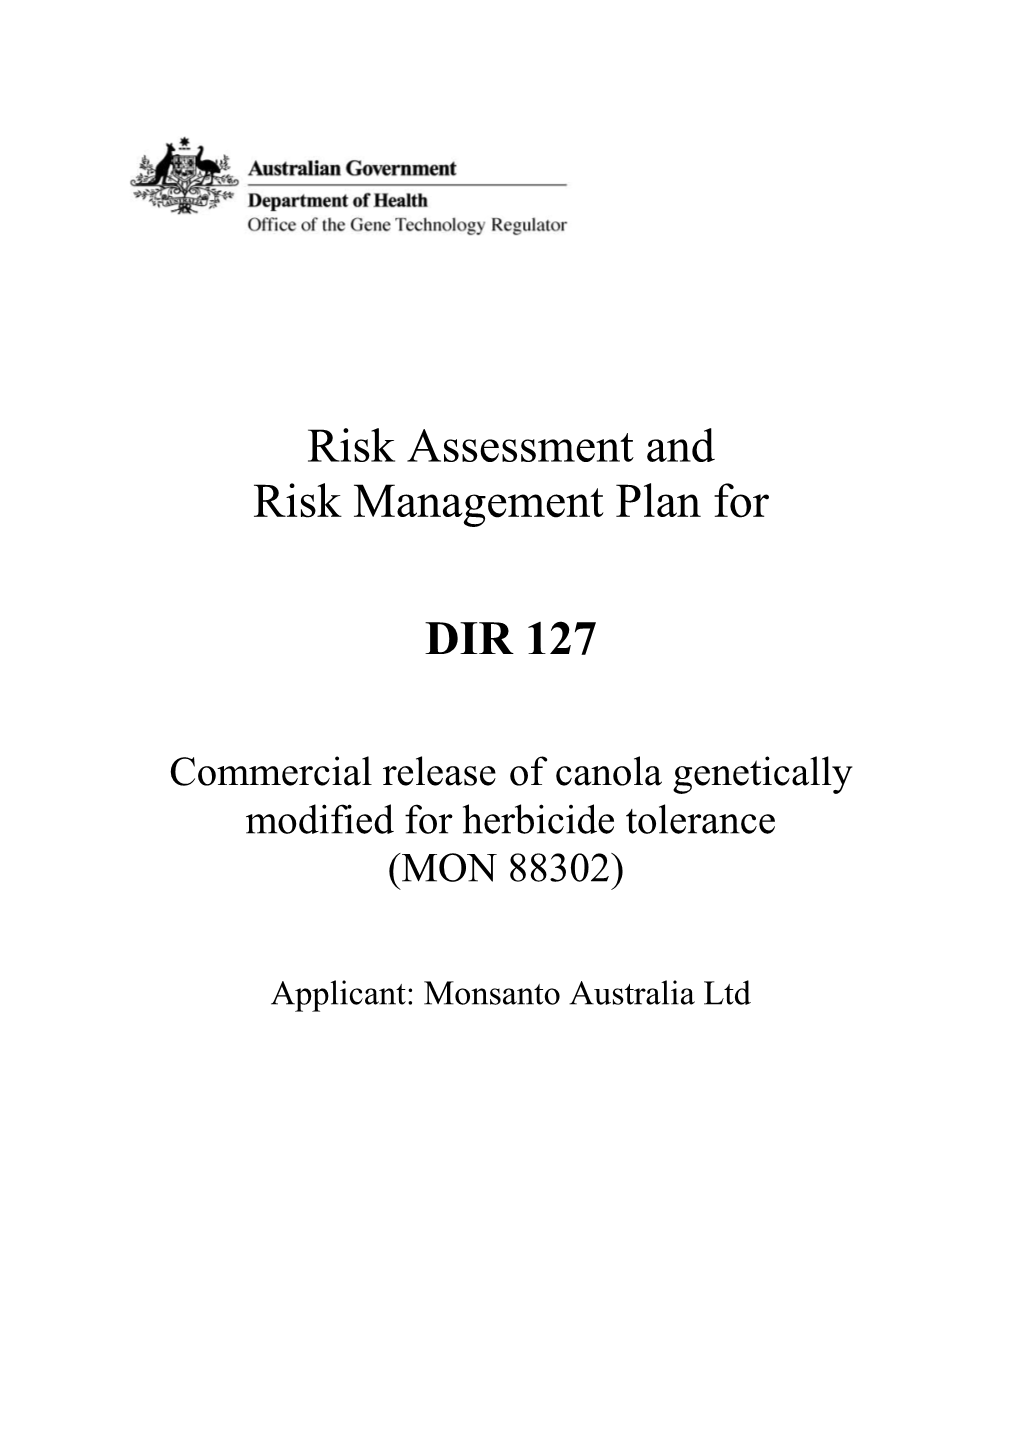 DIR 127 - Risk Assessment and Risk Management Plan (RARMP)